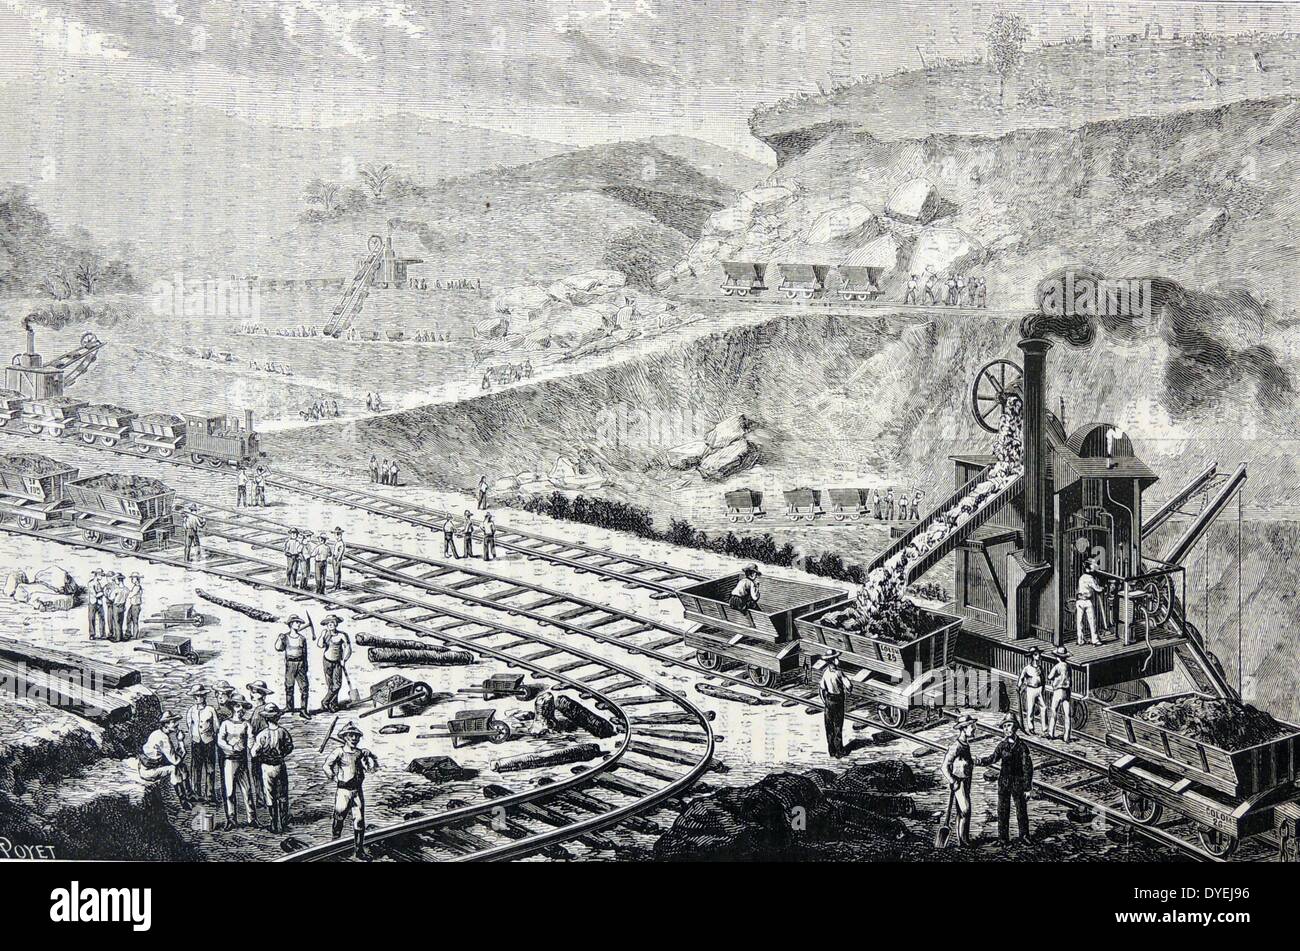 Dampfbetriebene Bagger die Erde während der Versuch, auf dem französischen Panama Canal Company den Kanal 1880-c 1890 zu bauen. Enterprise unter der Leitung von Ferdinand De Lesseps. Gravur von "La Nature", Paris, 1888. Stockfoto